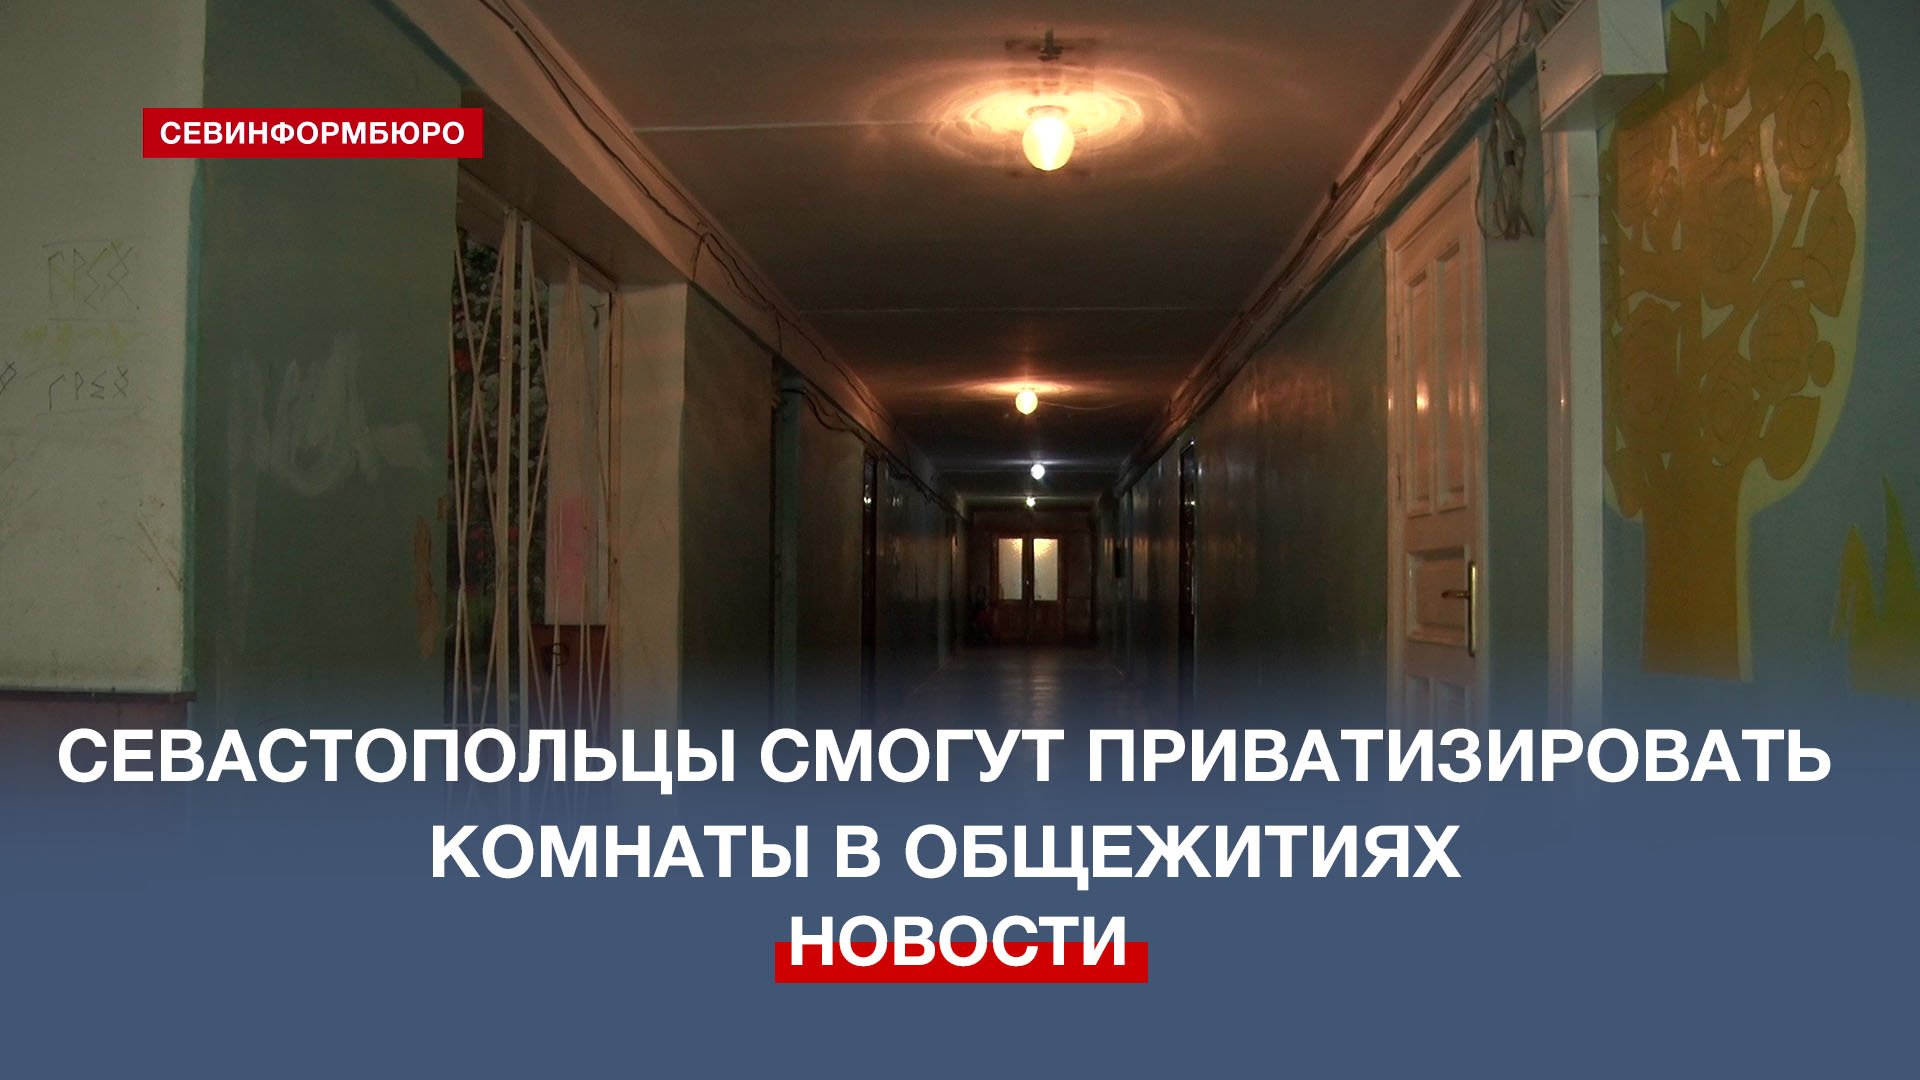 Общежитие можно приватизировать. Общежитие на Севастопольской.